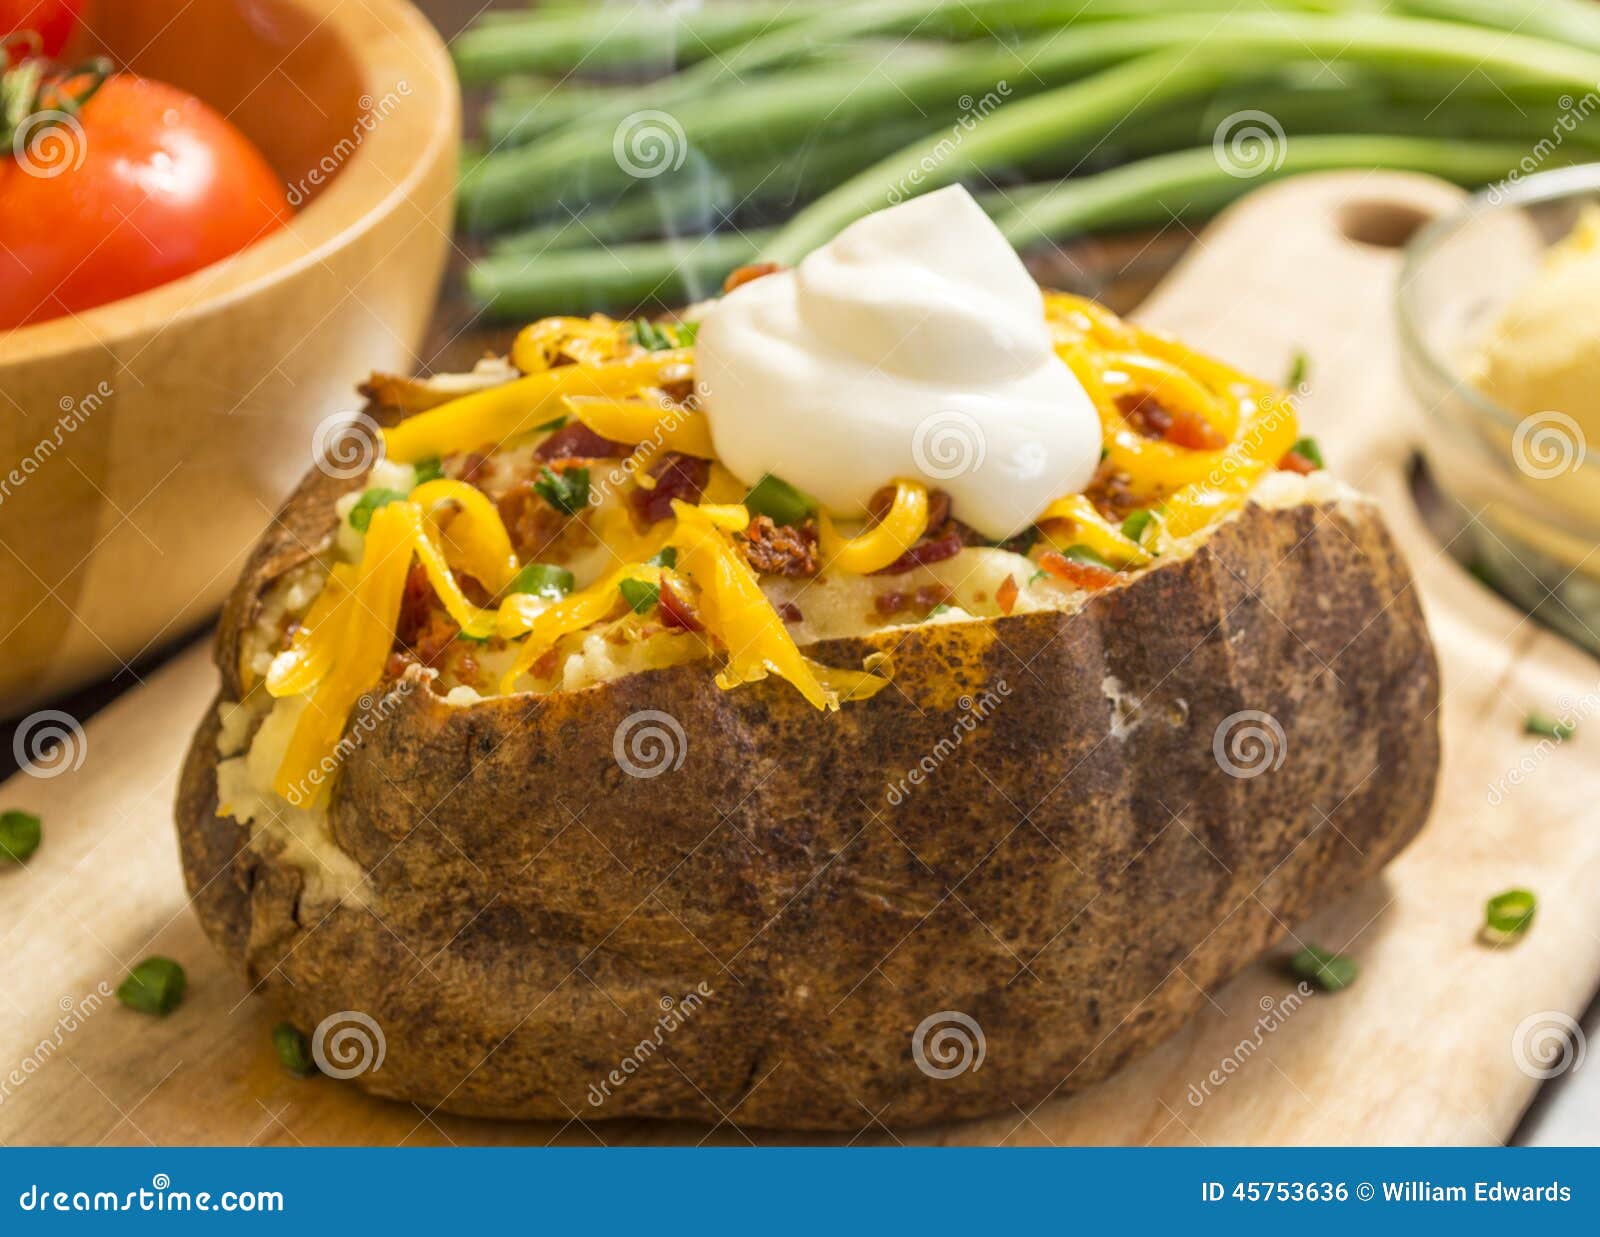 baked potatoe supreme